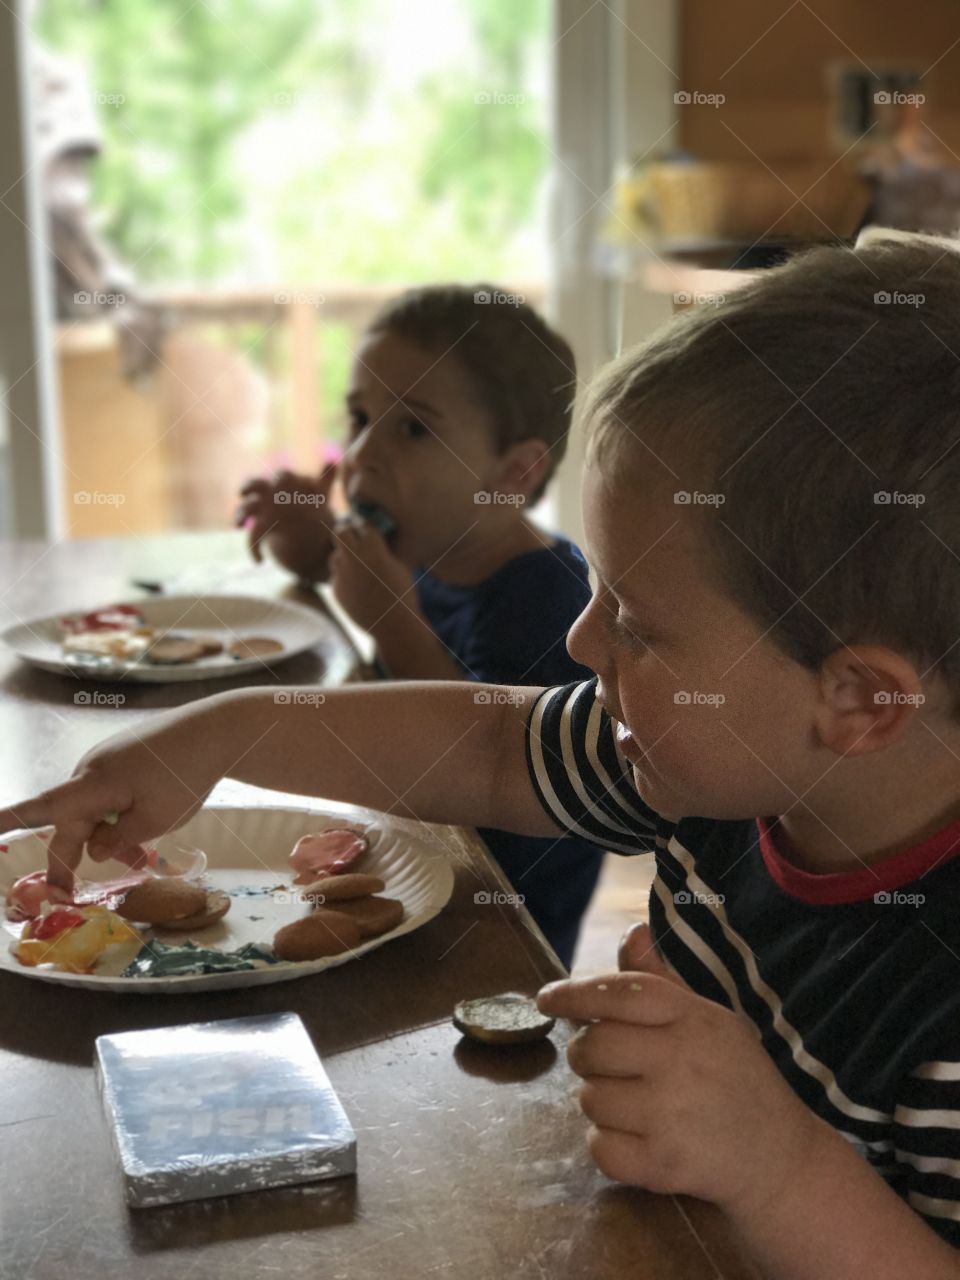 Children eating breakfast on table